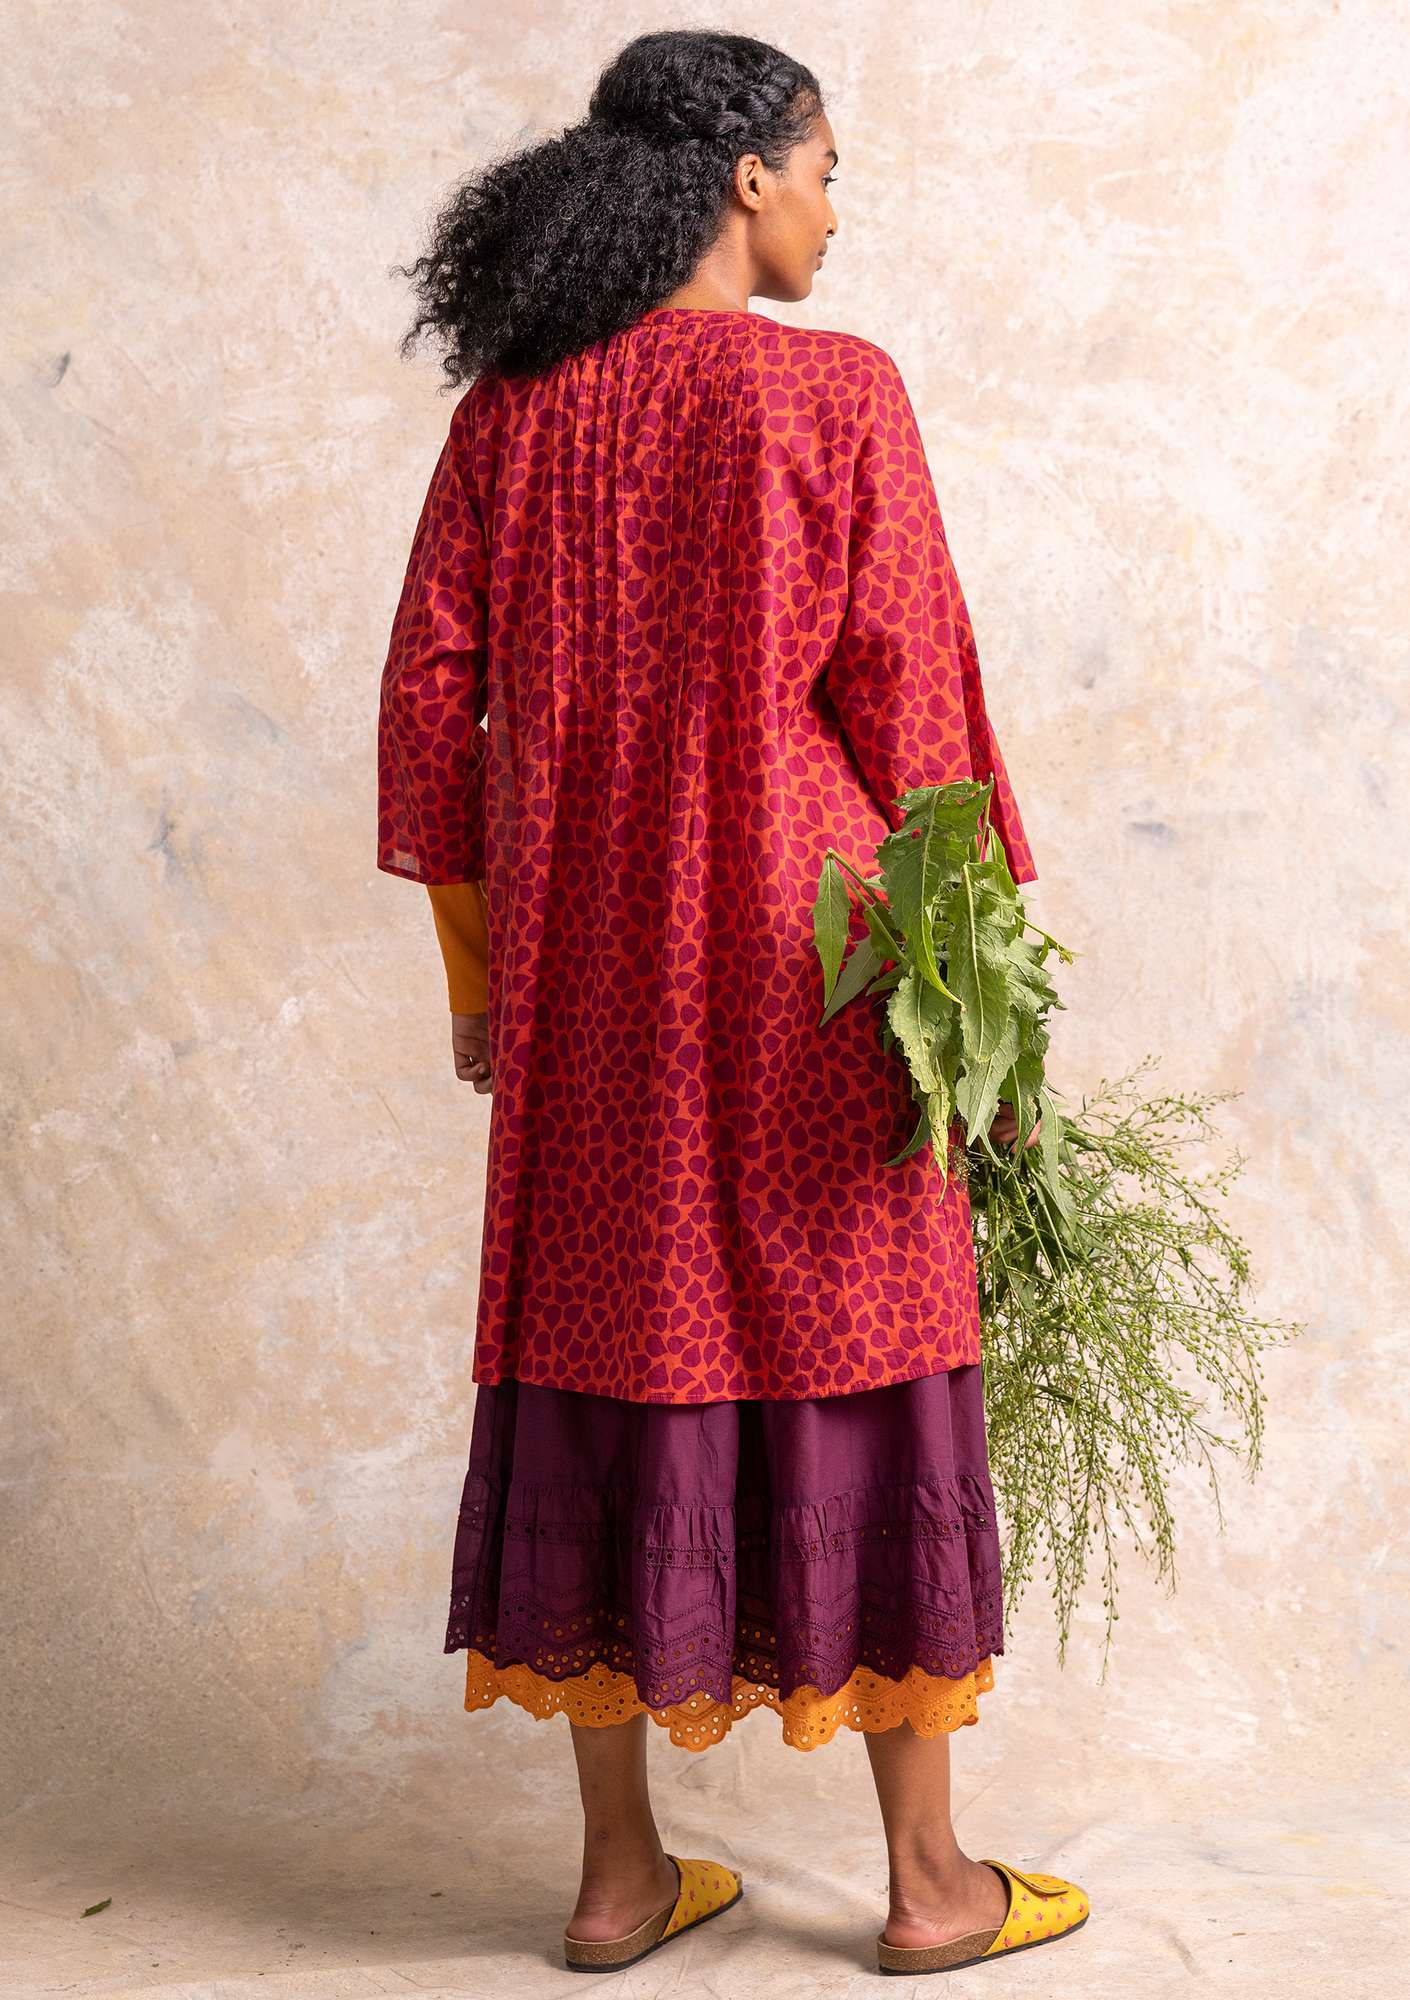 Vevd kjole «Serafina» i økologisk bomull papegøyerød/mønstret thumbnail